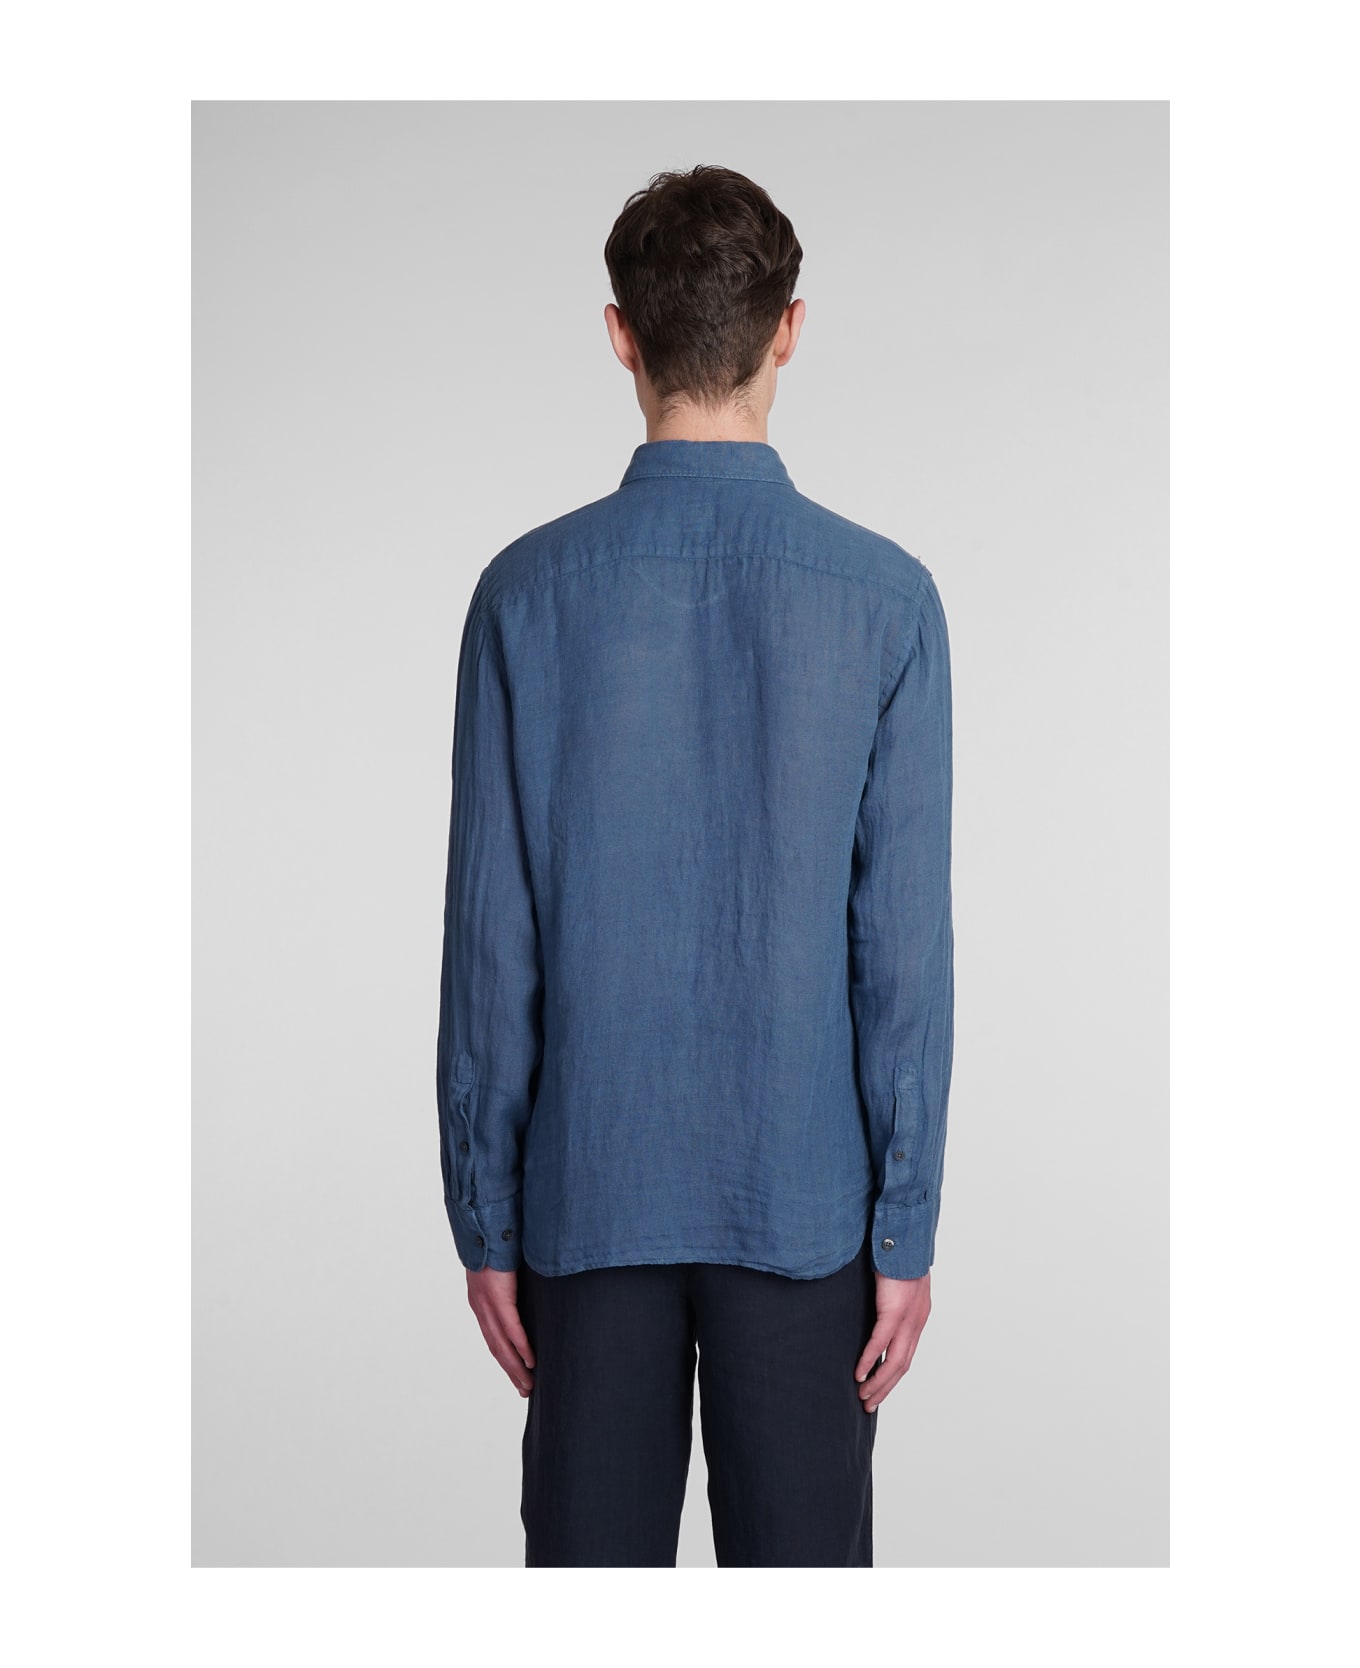 120% Lino Shirt In Blue Linen - blue